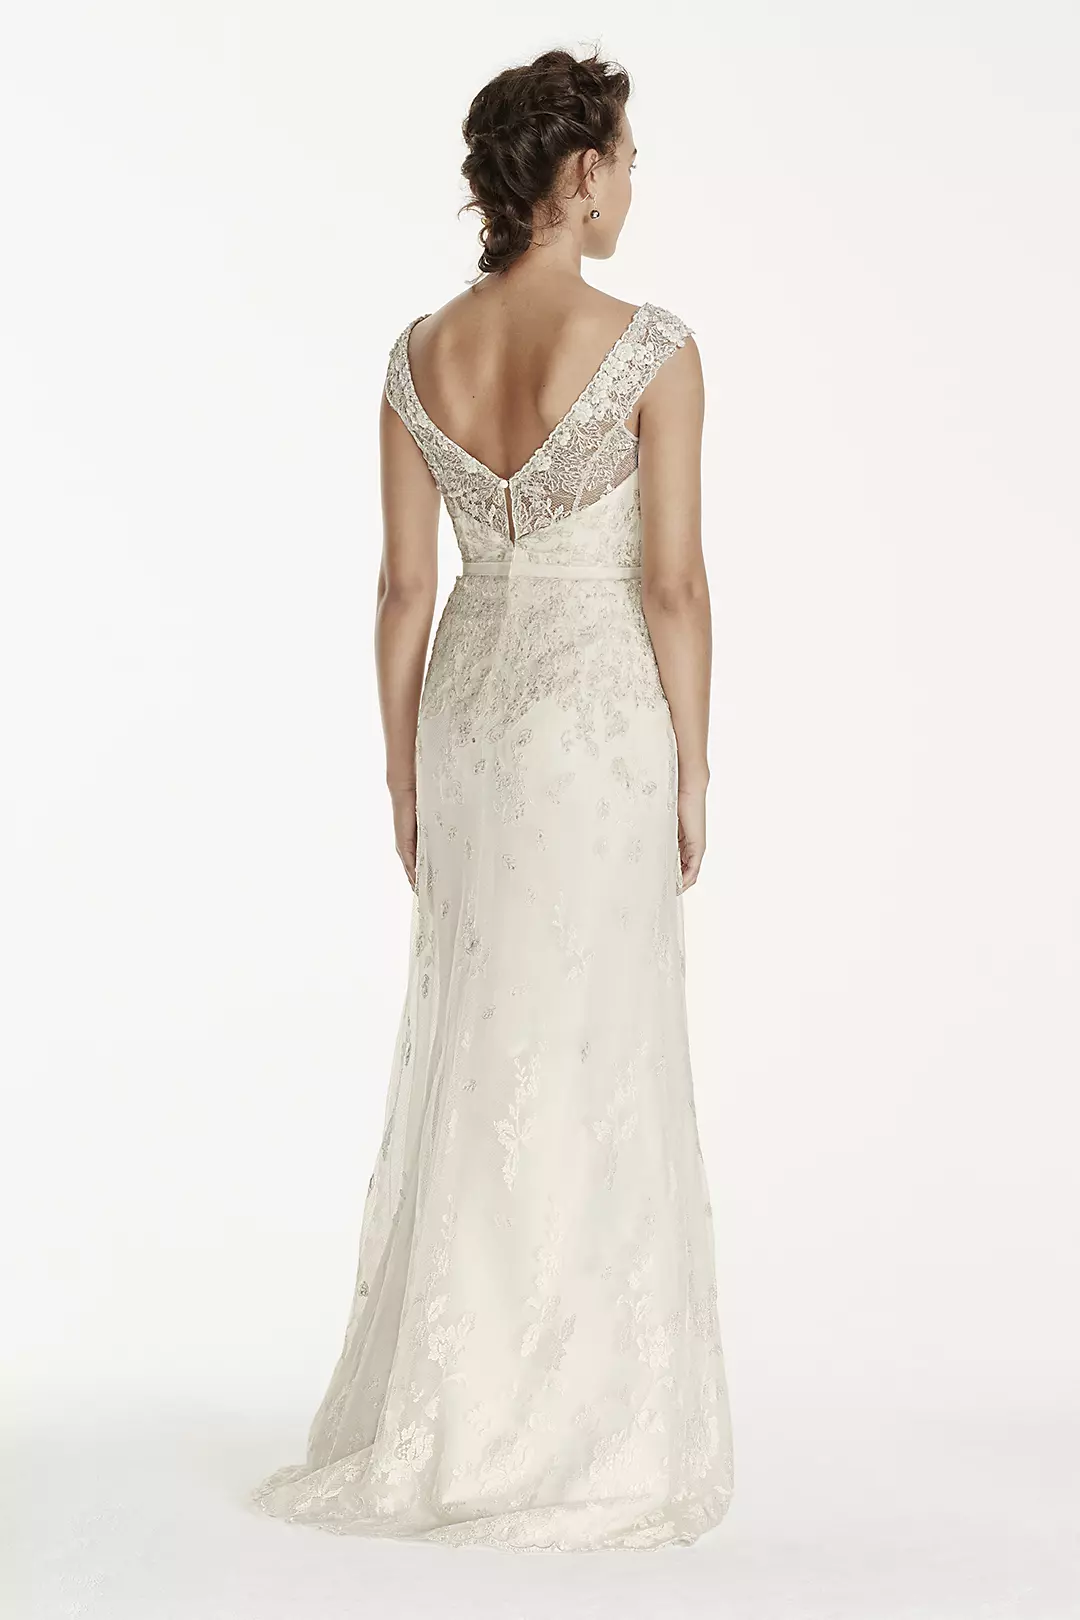 Melissa Sweet Illusion Sleeve Lace Wedding Dress Image 2